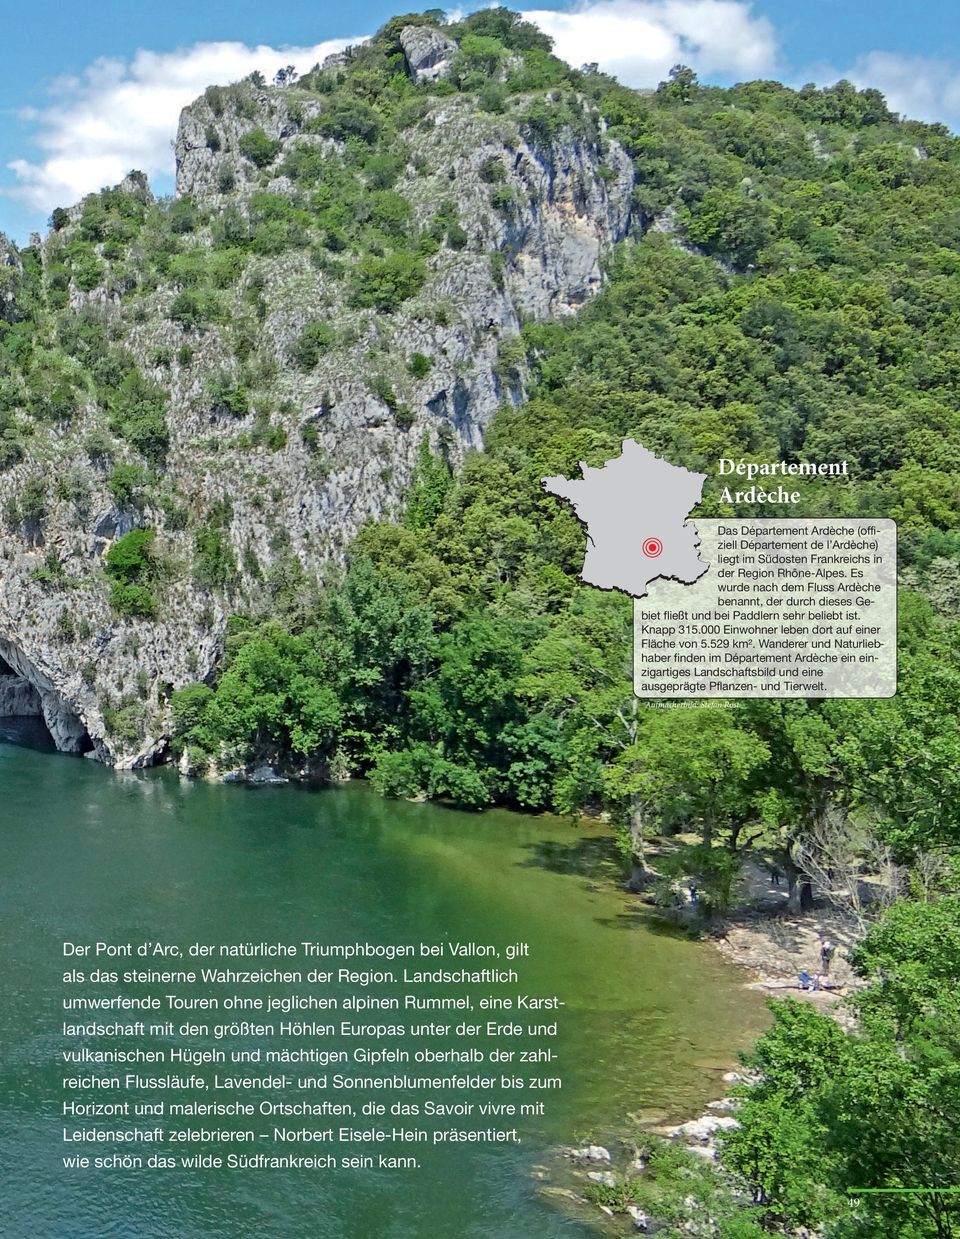 Wanderer und Naturliebhaber finden im Département Ardèche ein einzigartiges Landschaftsbild und eine ausgeprägte Pflanzen- und Tierwelt.